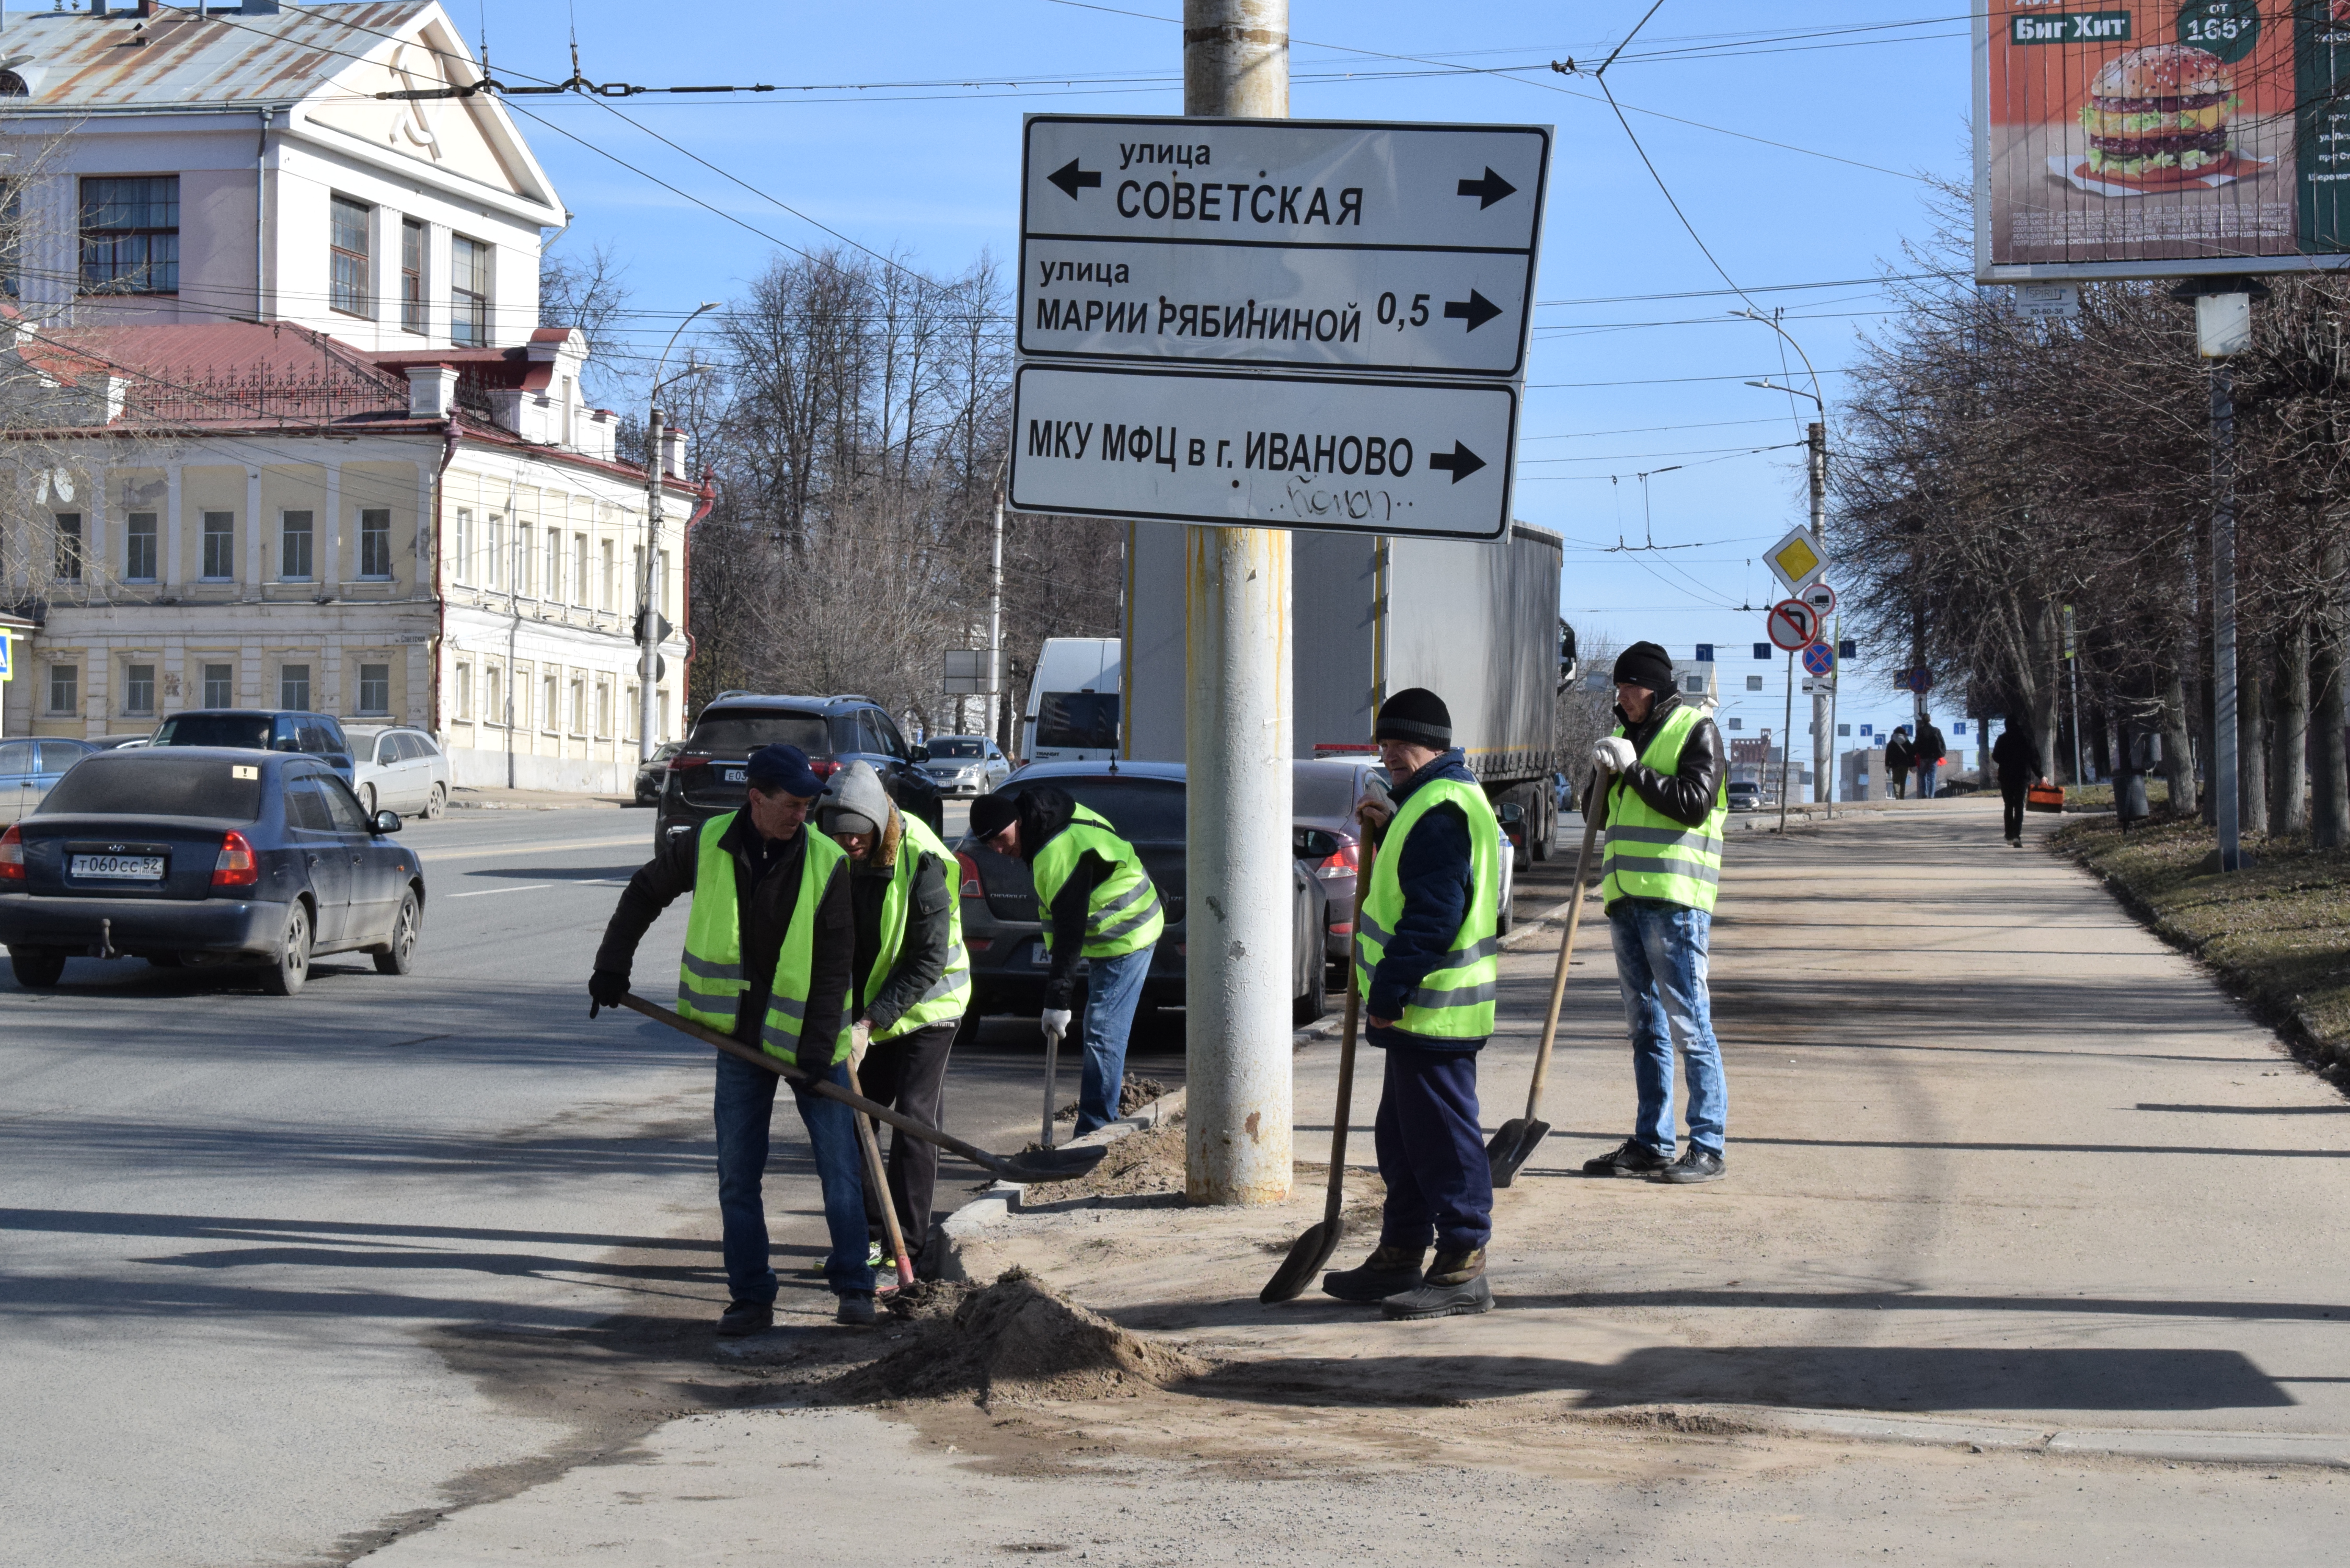 Больше ста рабочих направлены на уборку города 22 апреля.